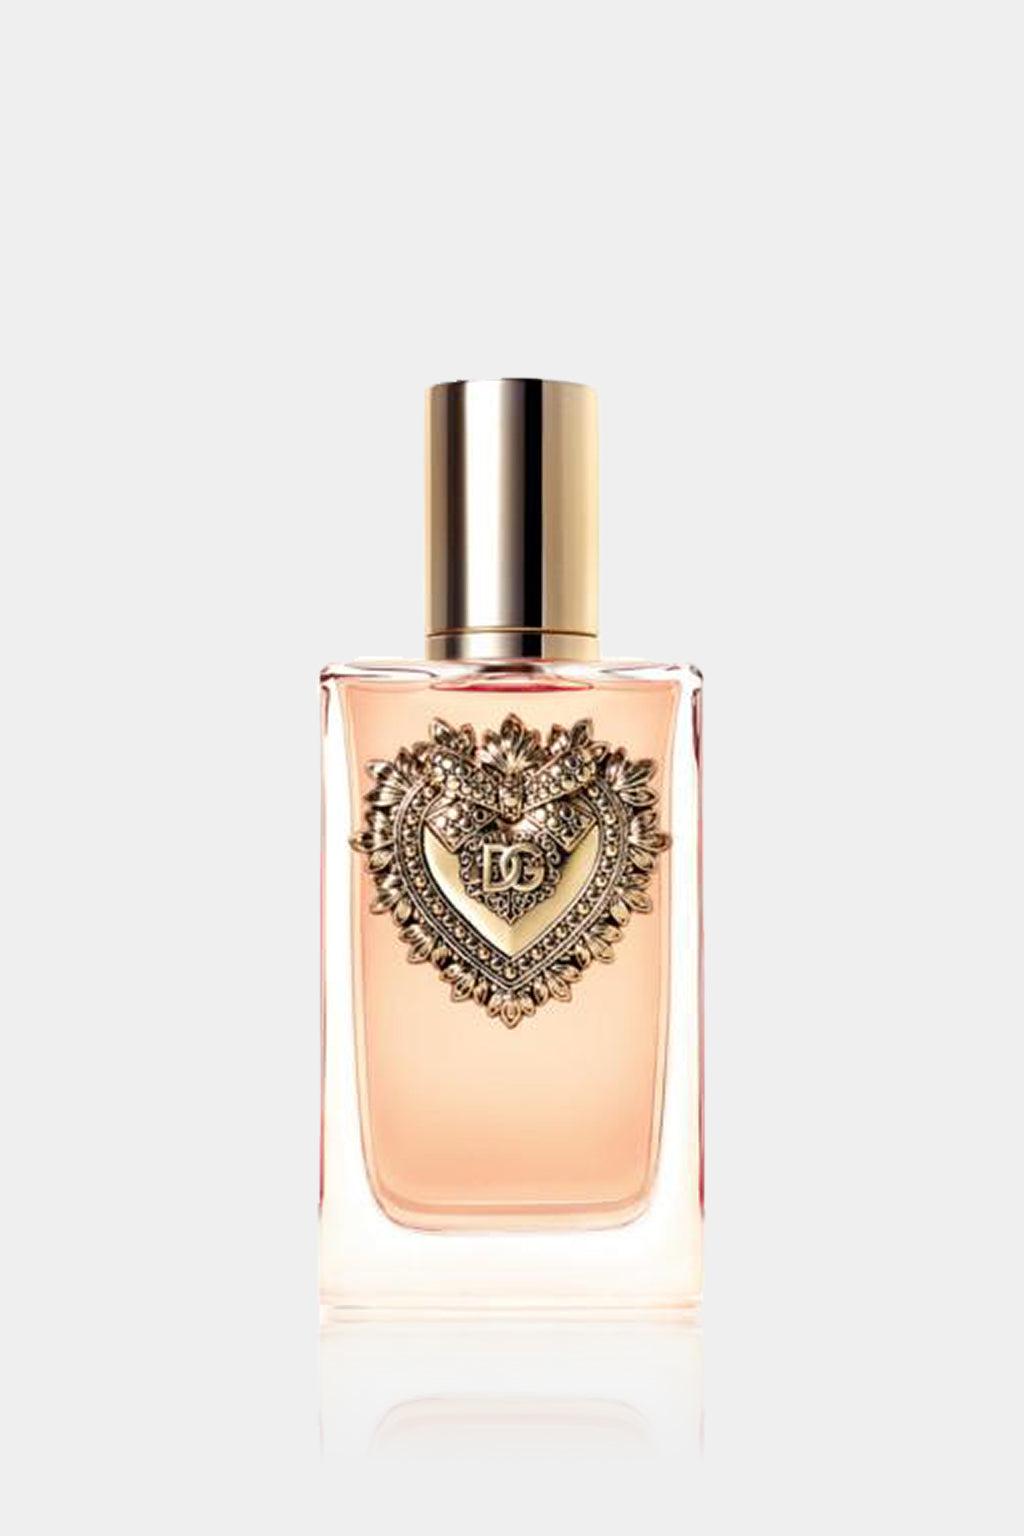 Dolce & Gabbana - Devotion Eau de Parfum